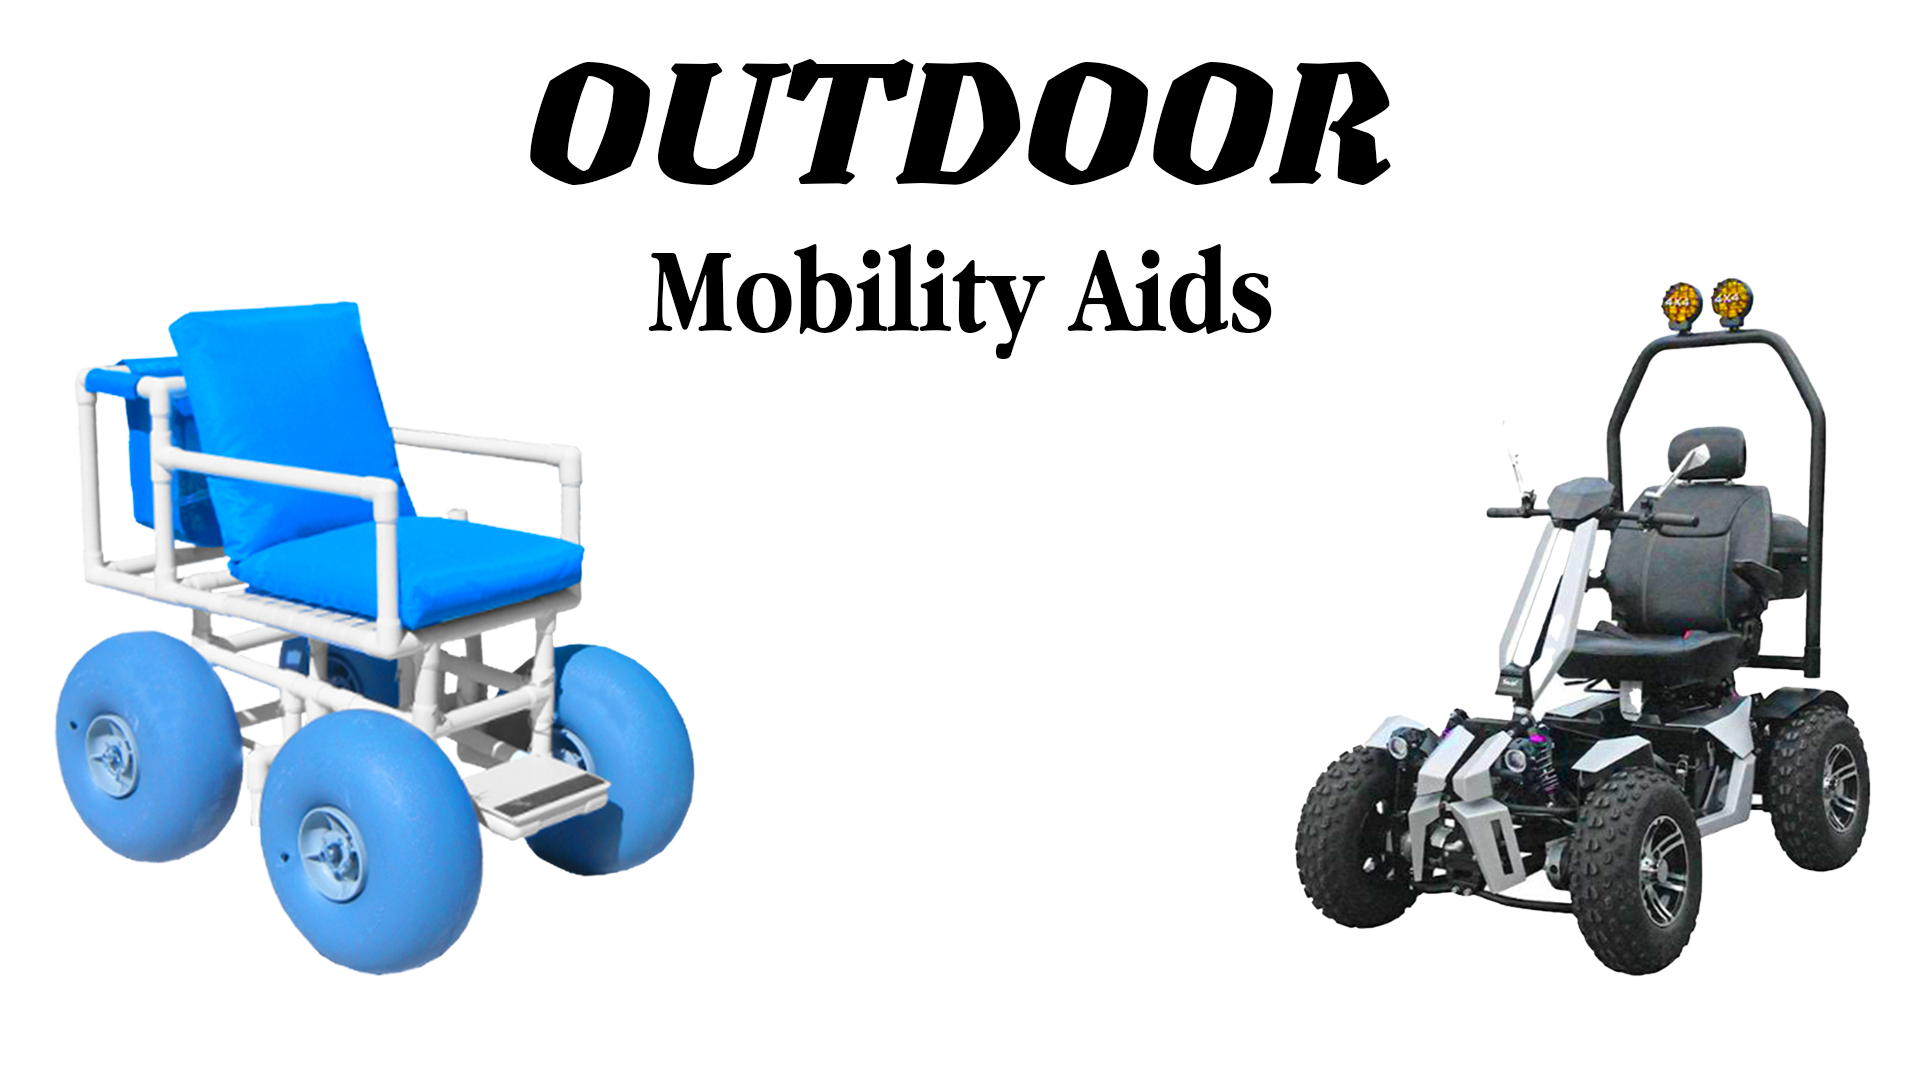 //bestmobilityequipment.com/cdn/shop/files/Outdoor_Mobility_Aids_68421713-c8f3-42e2-9113-c62f84bca199.png?v=1696628228